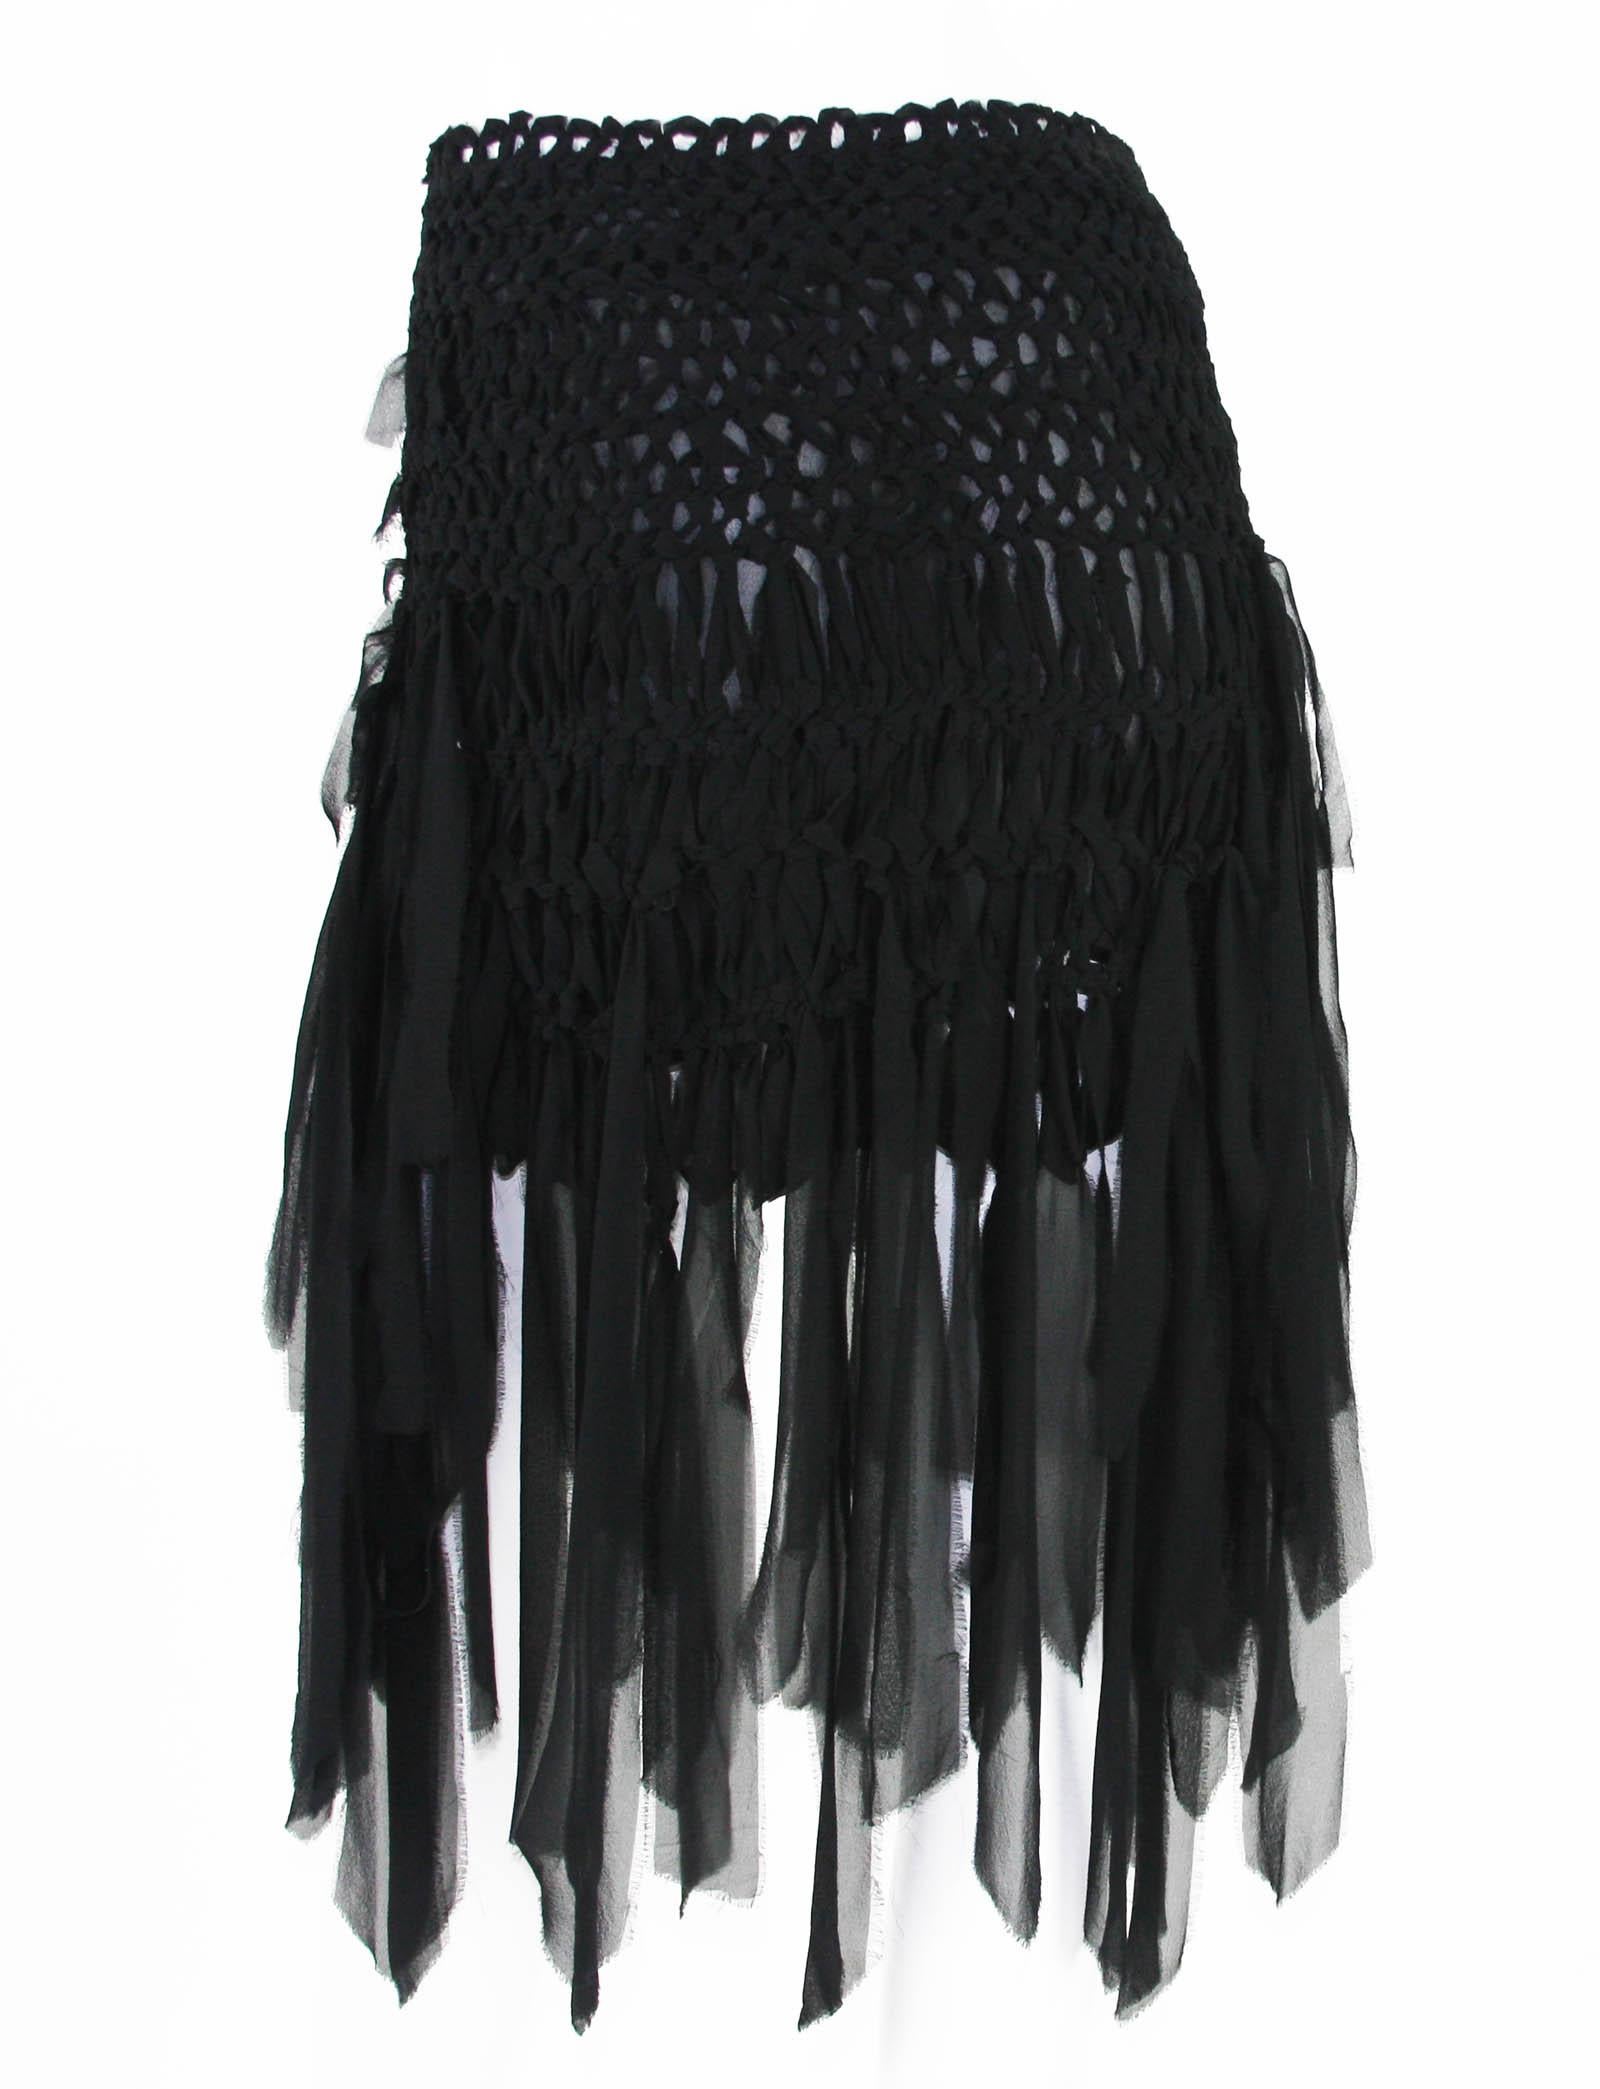 Tom Ford for Yves Saint Laurent S/S 2002 Mini Black Silk Woven Fringe Skirt S M For Sale 1